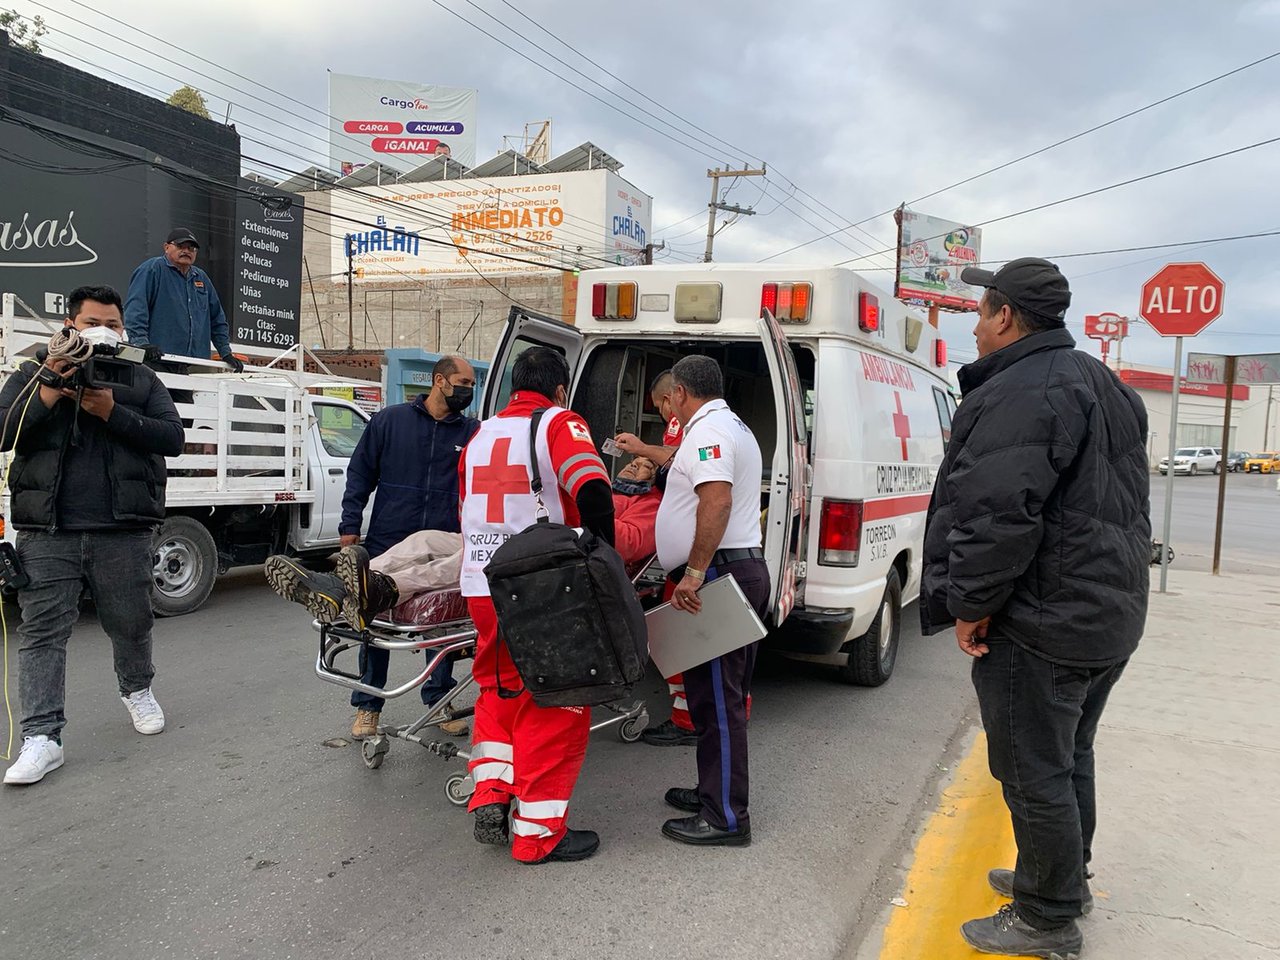 Camioneta le corta la circulación a motociclista y provoca accidente en Torreón